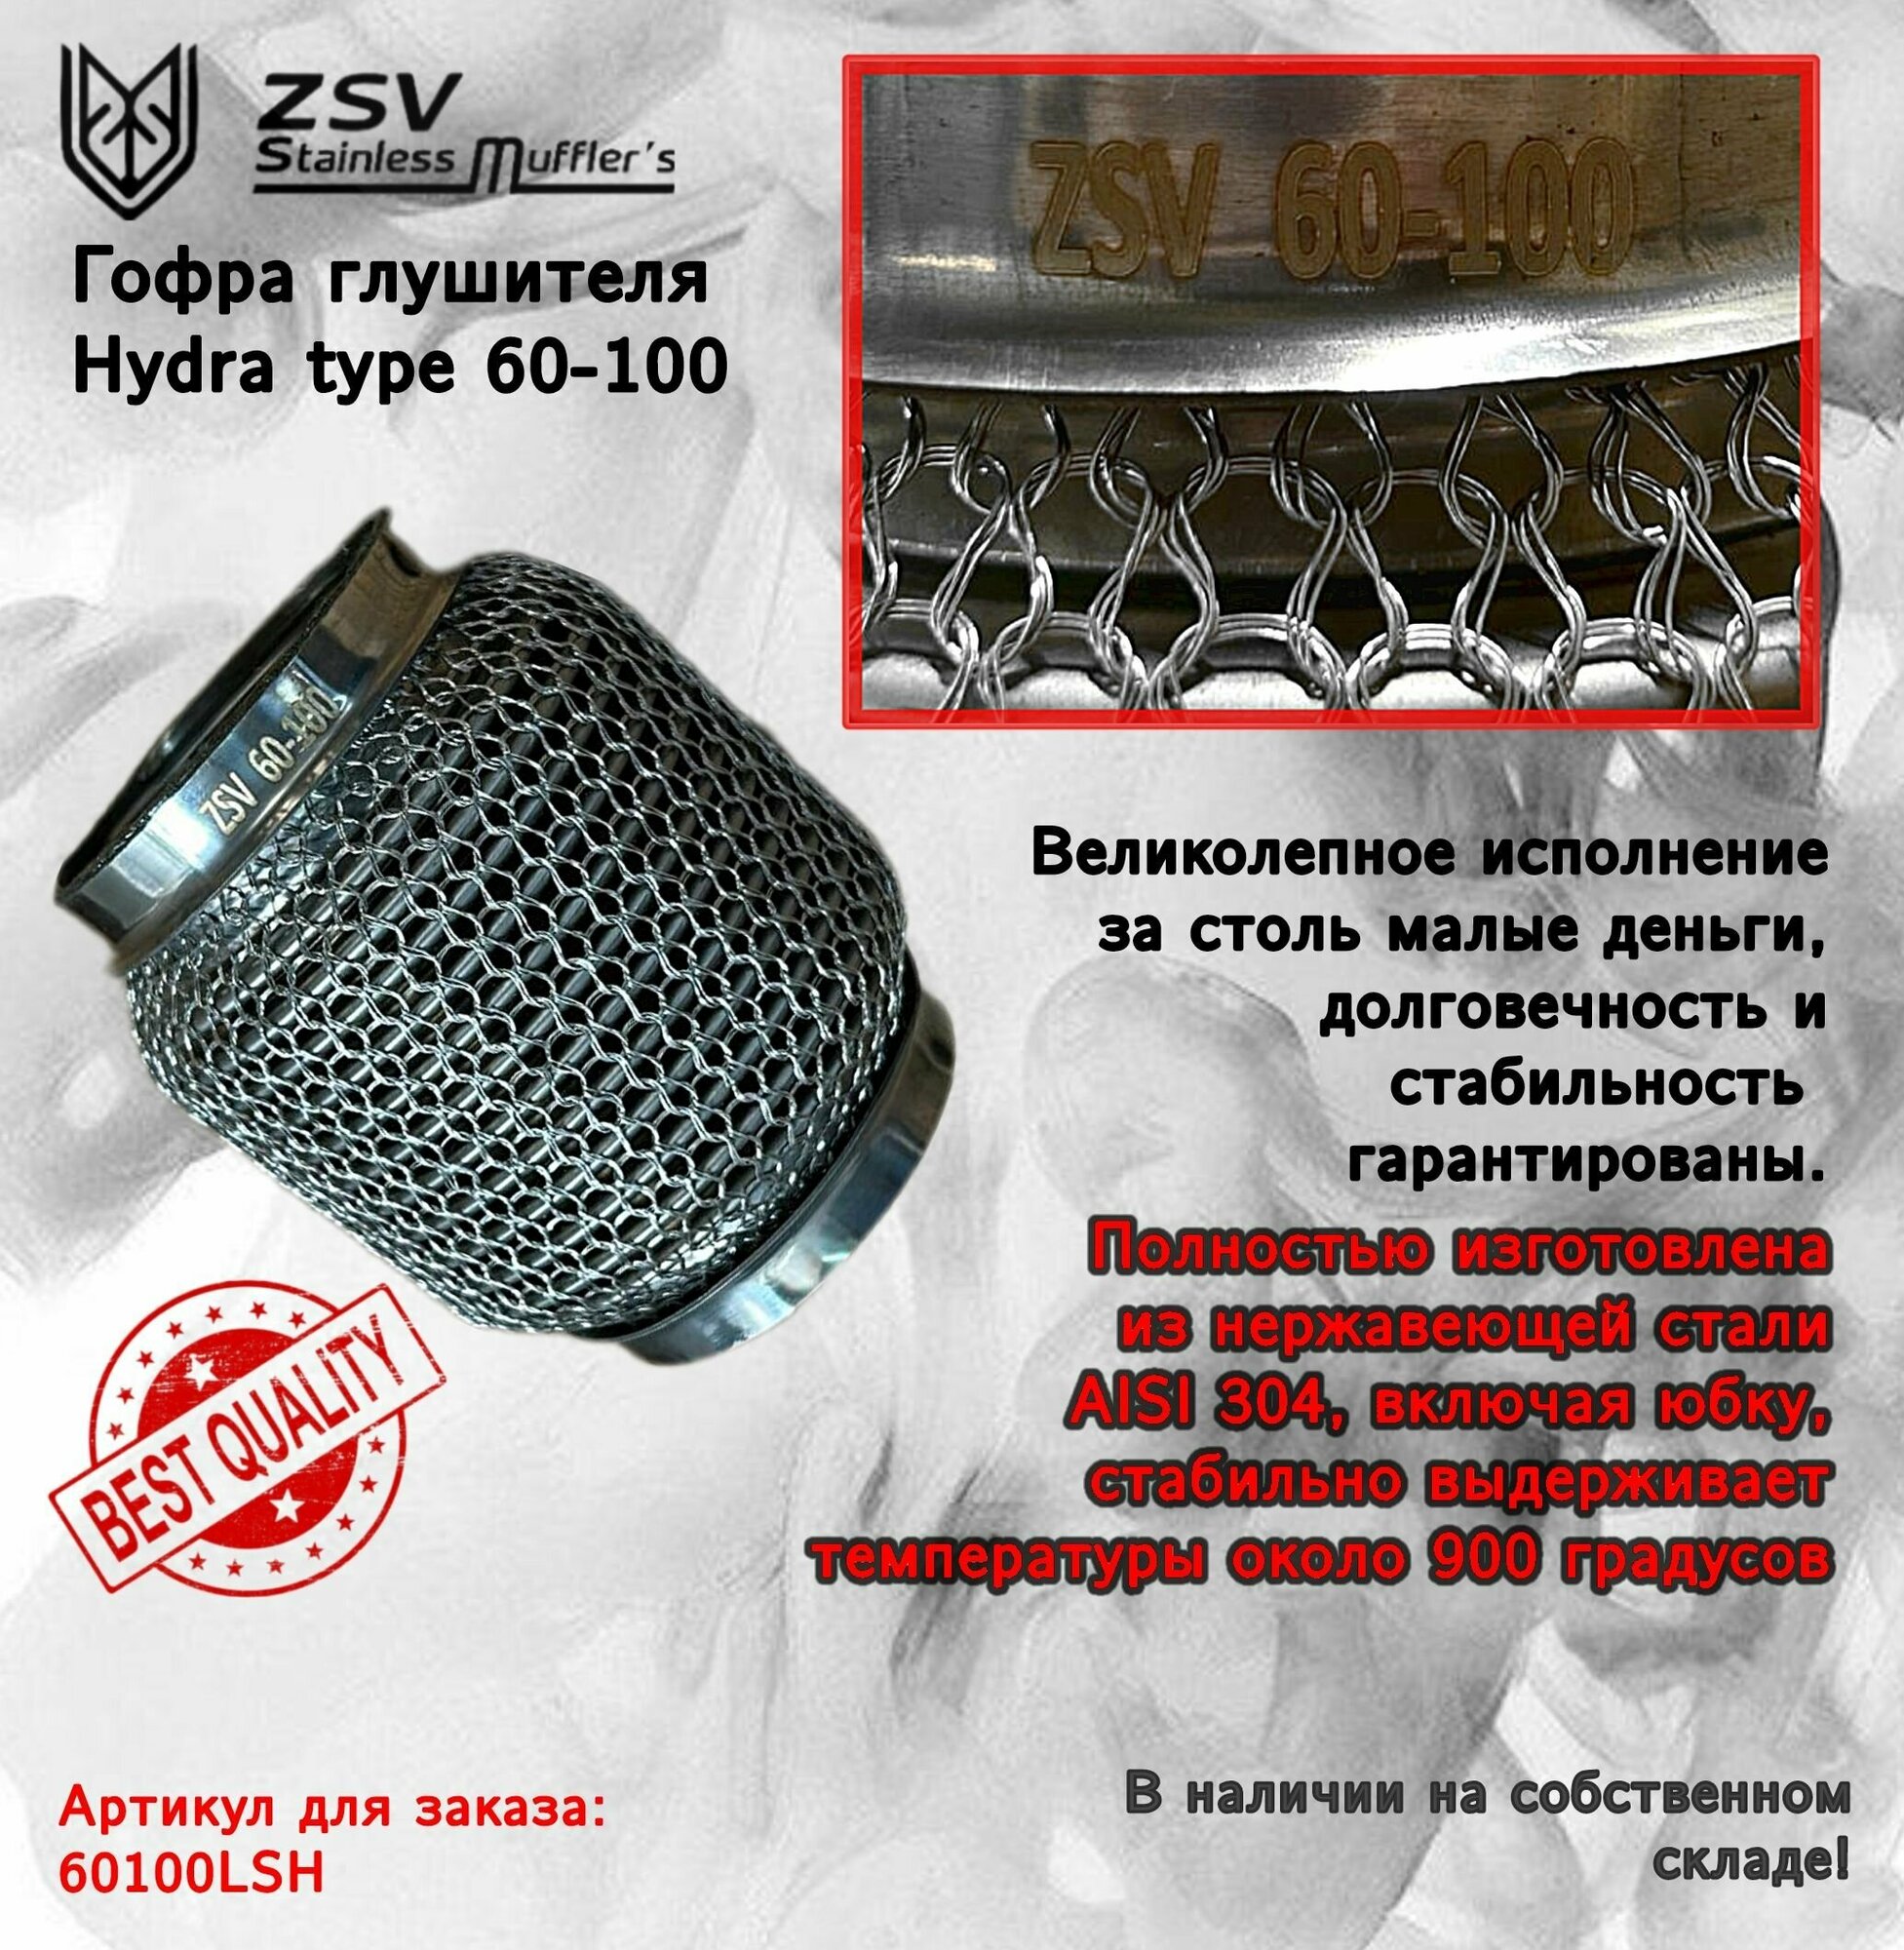 Гофра глушителя Hydra type 60-100 Улучшенная! полностью изготовлена из нержавеющей стали AISI 304